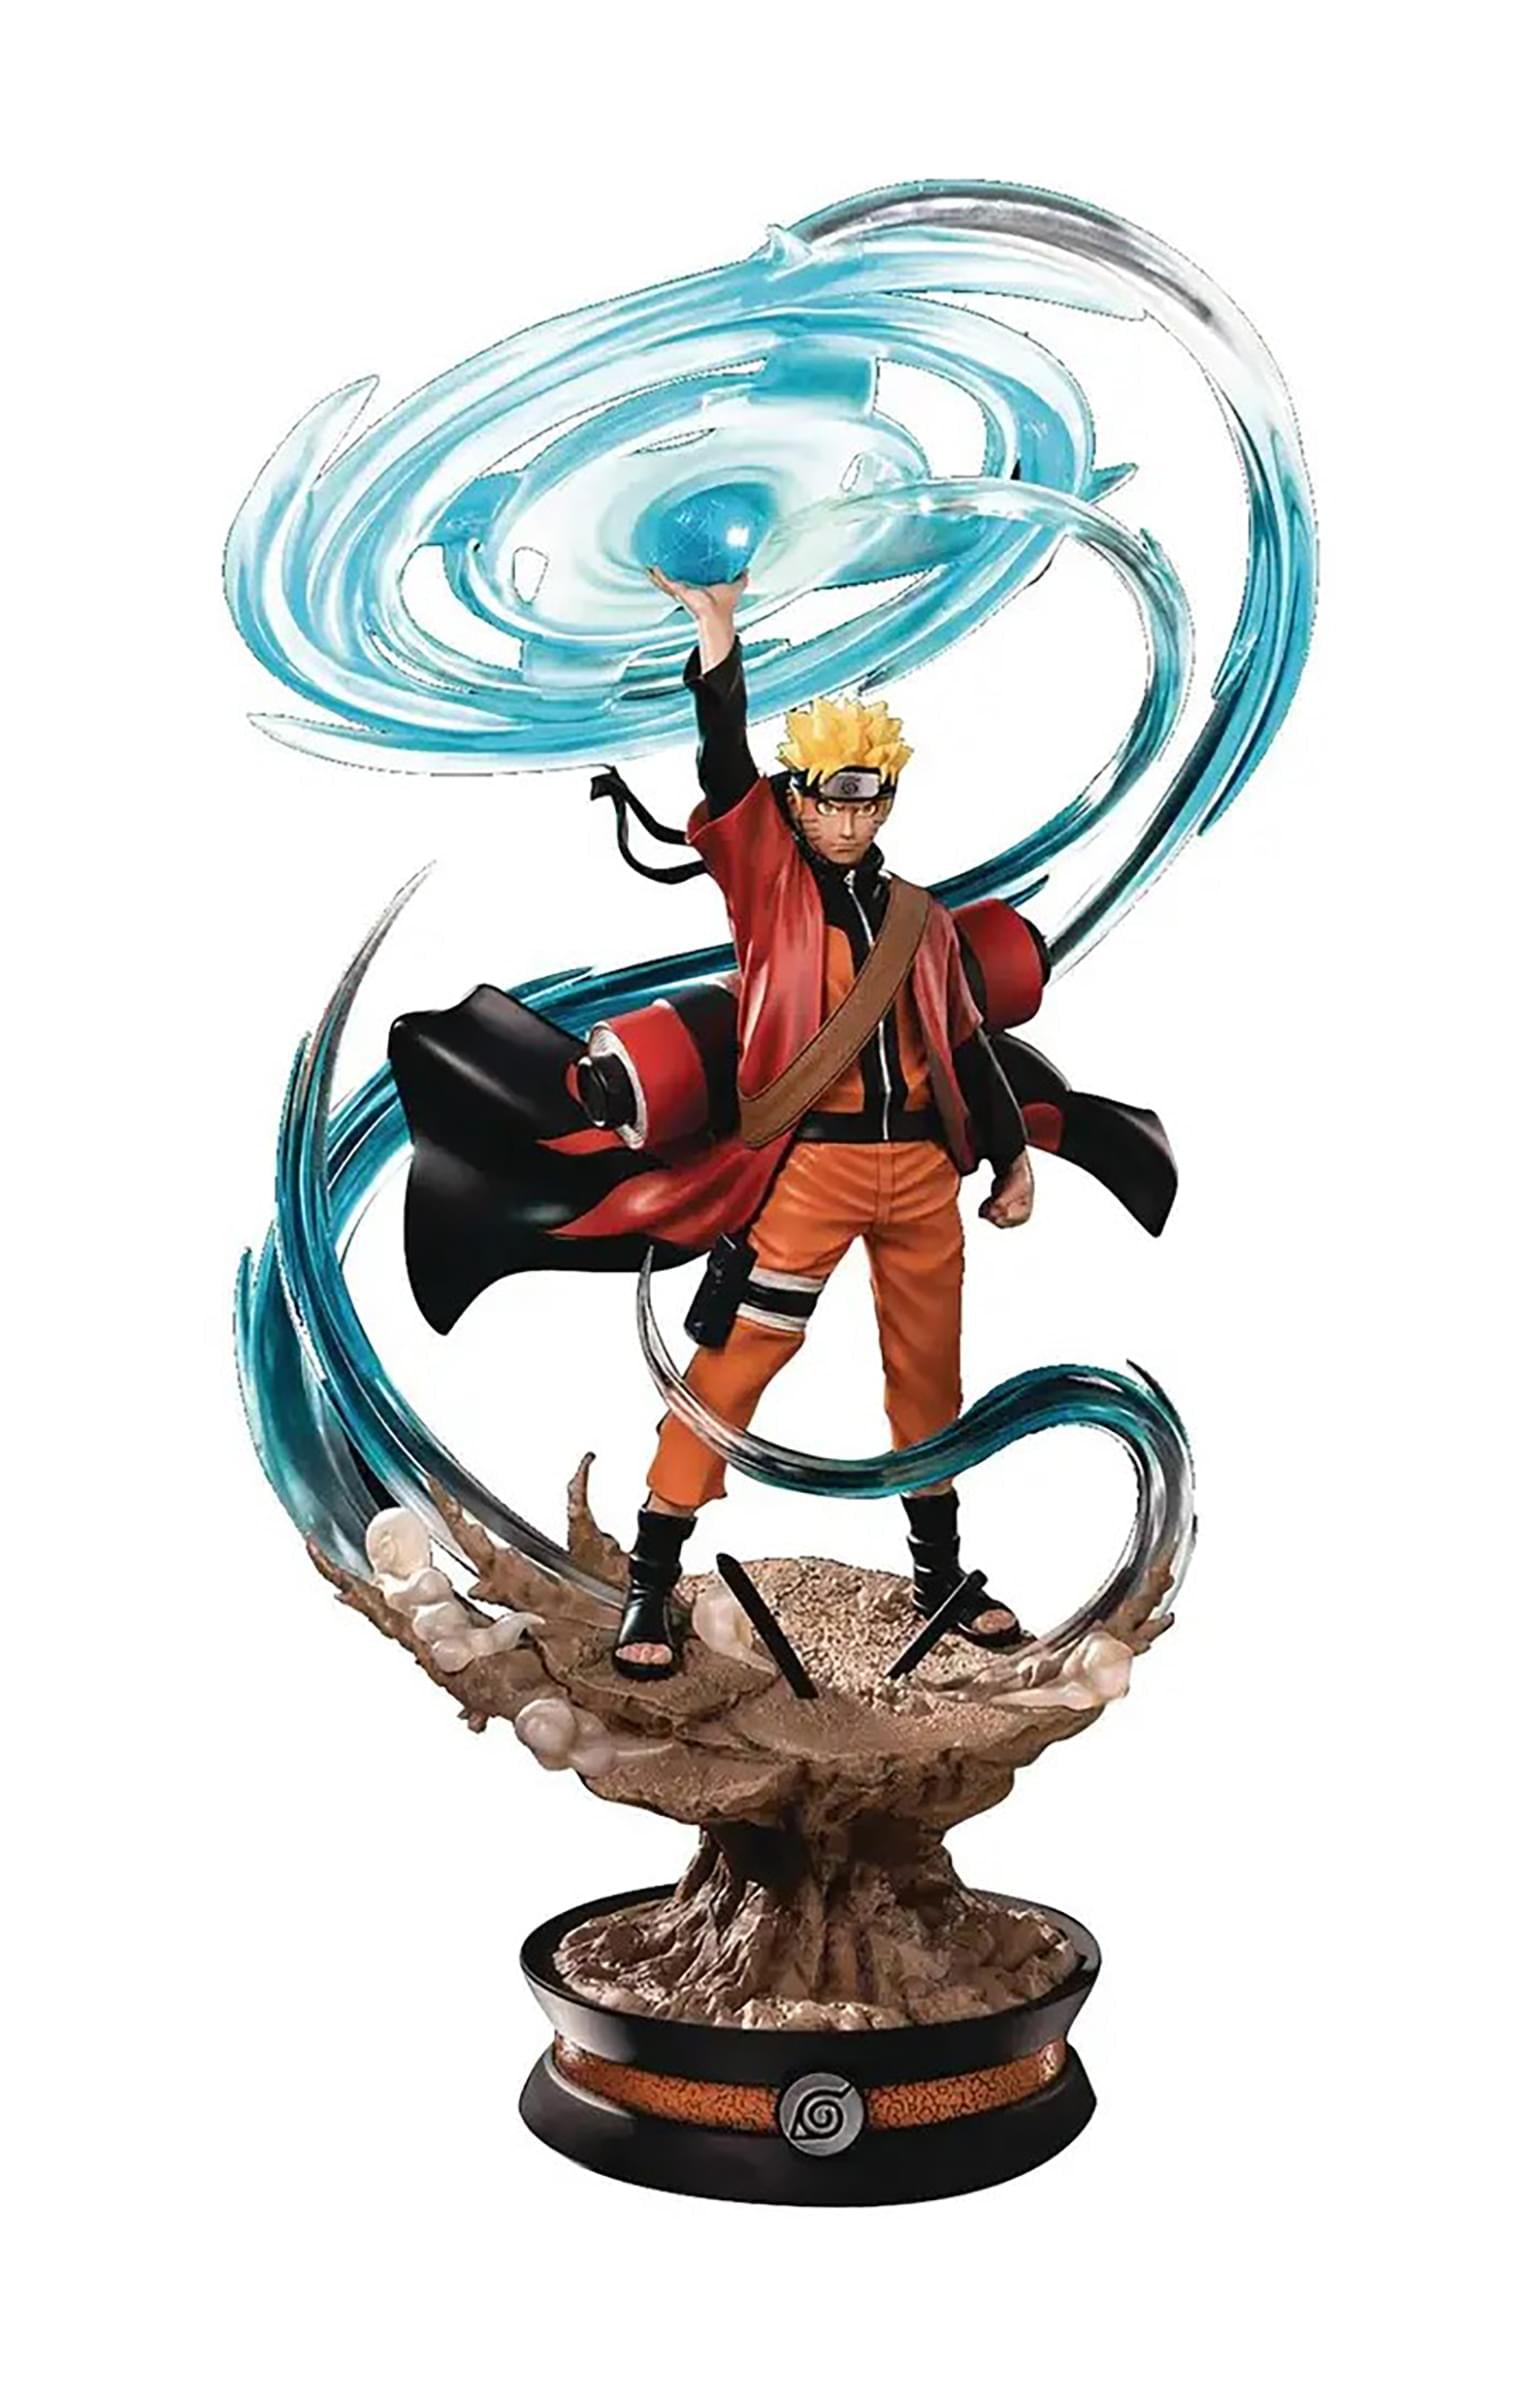 Figurine Naruto Shippuden - Encore Collection - Naruto Mode Chakra